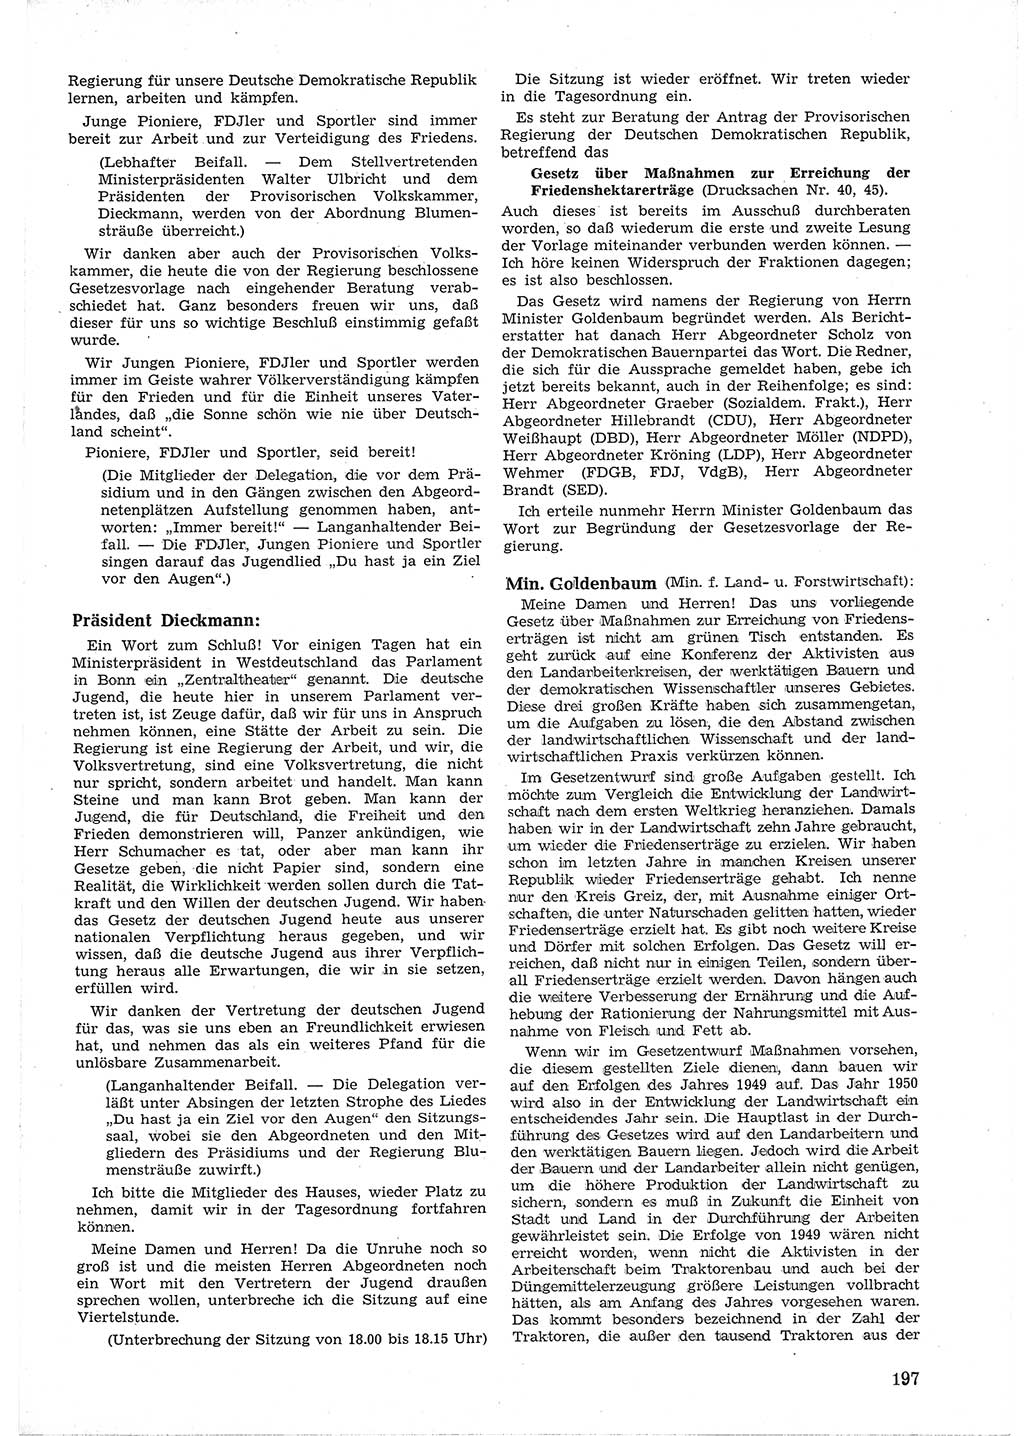 Provisorische Volkskammer (VK) der Deutschen Demokratischen Republik (DDR) 1949-1950, Dokument 209 (Prov. VK DDR 1949-1950, Dok. 209)